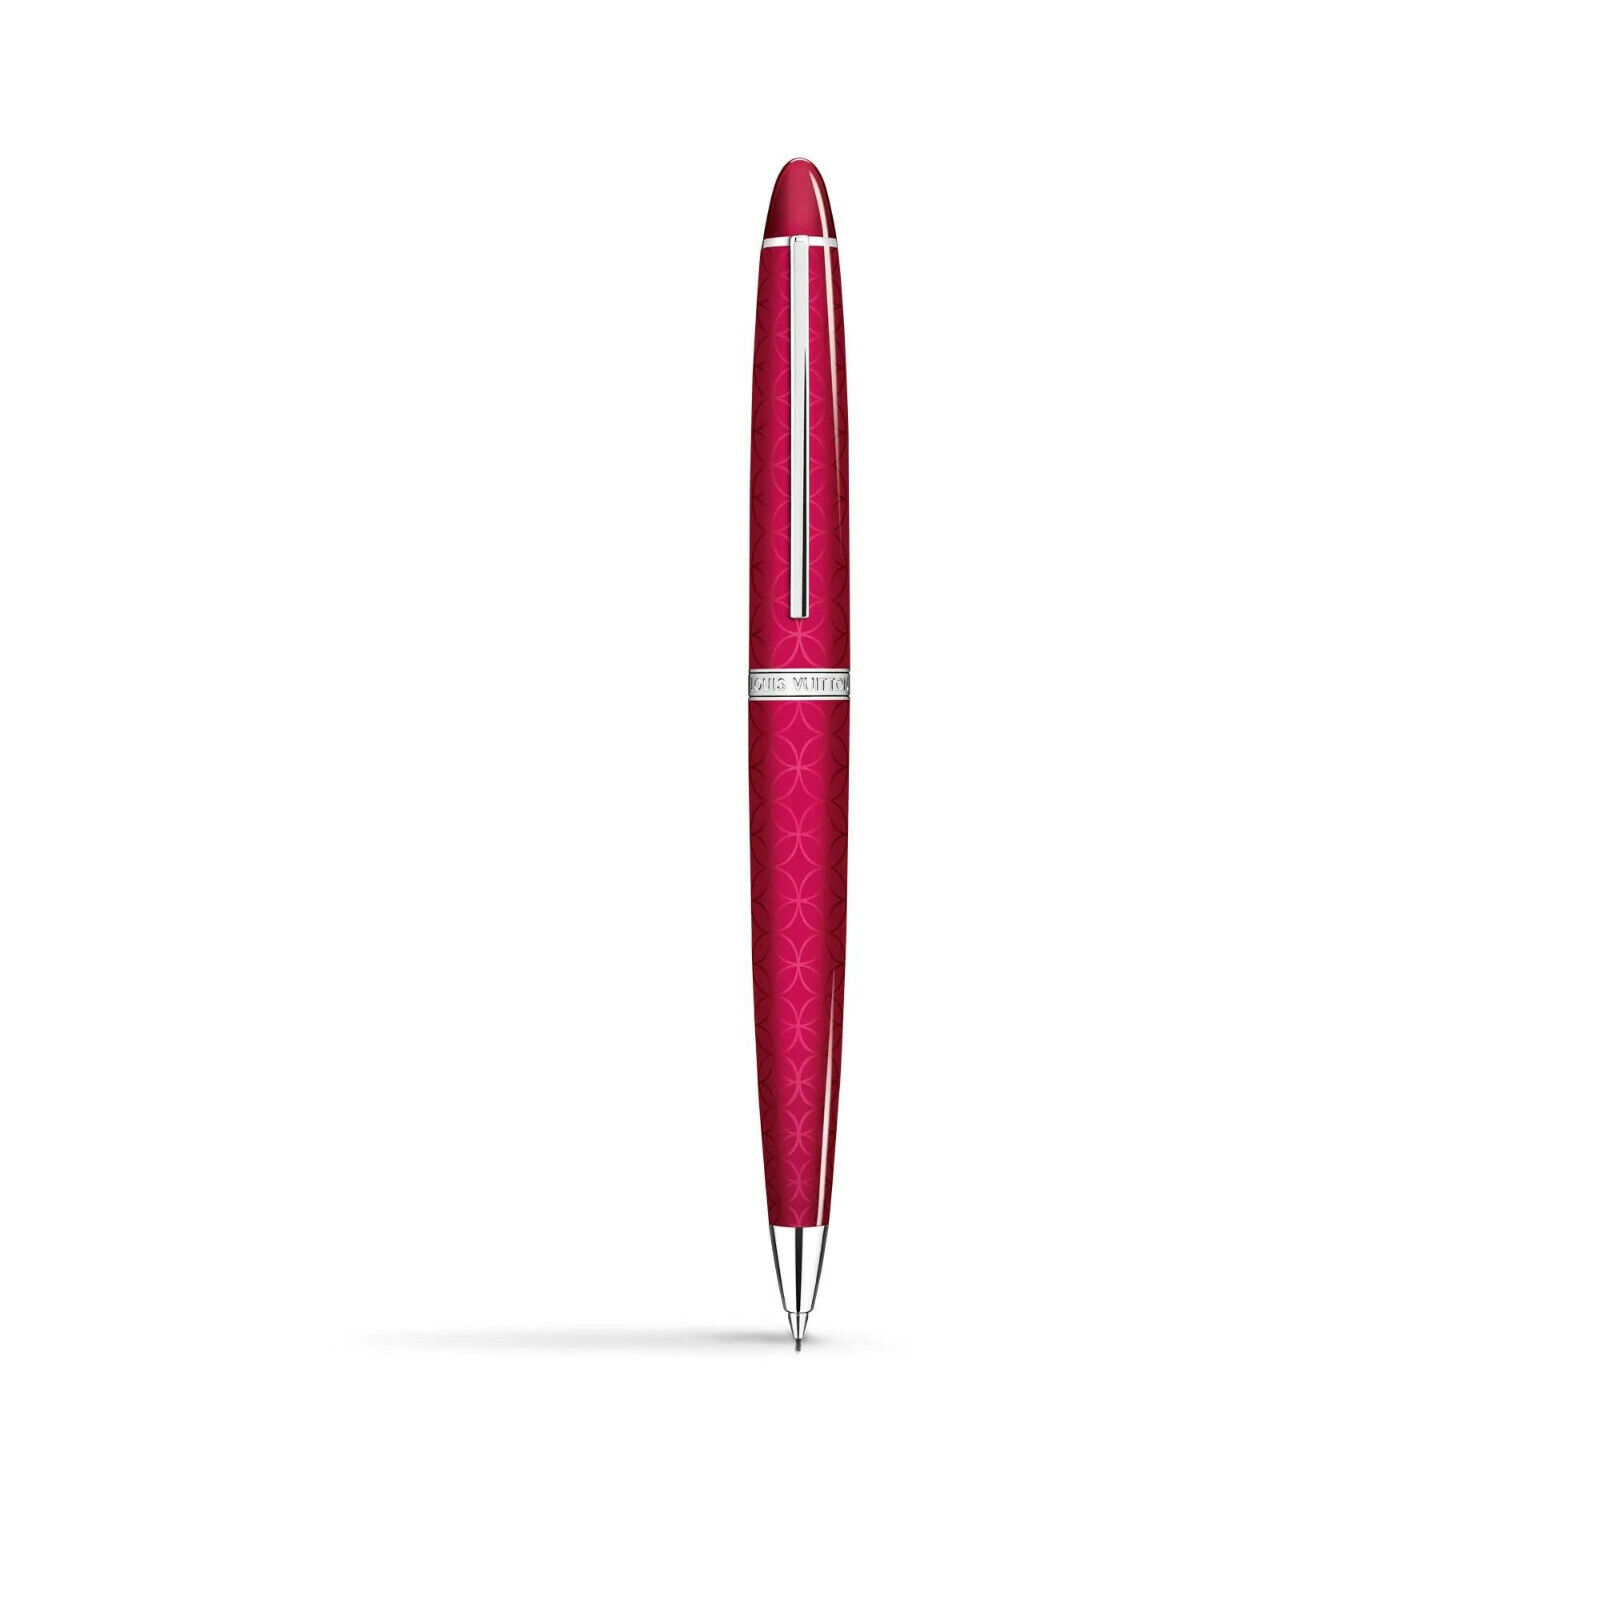 New Authentic Louis Vuitton Mechanical Pencil Carte du Tendre N79079 #962H